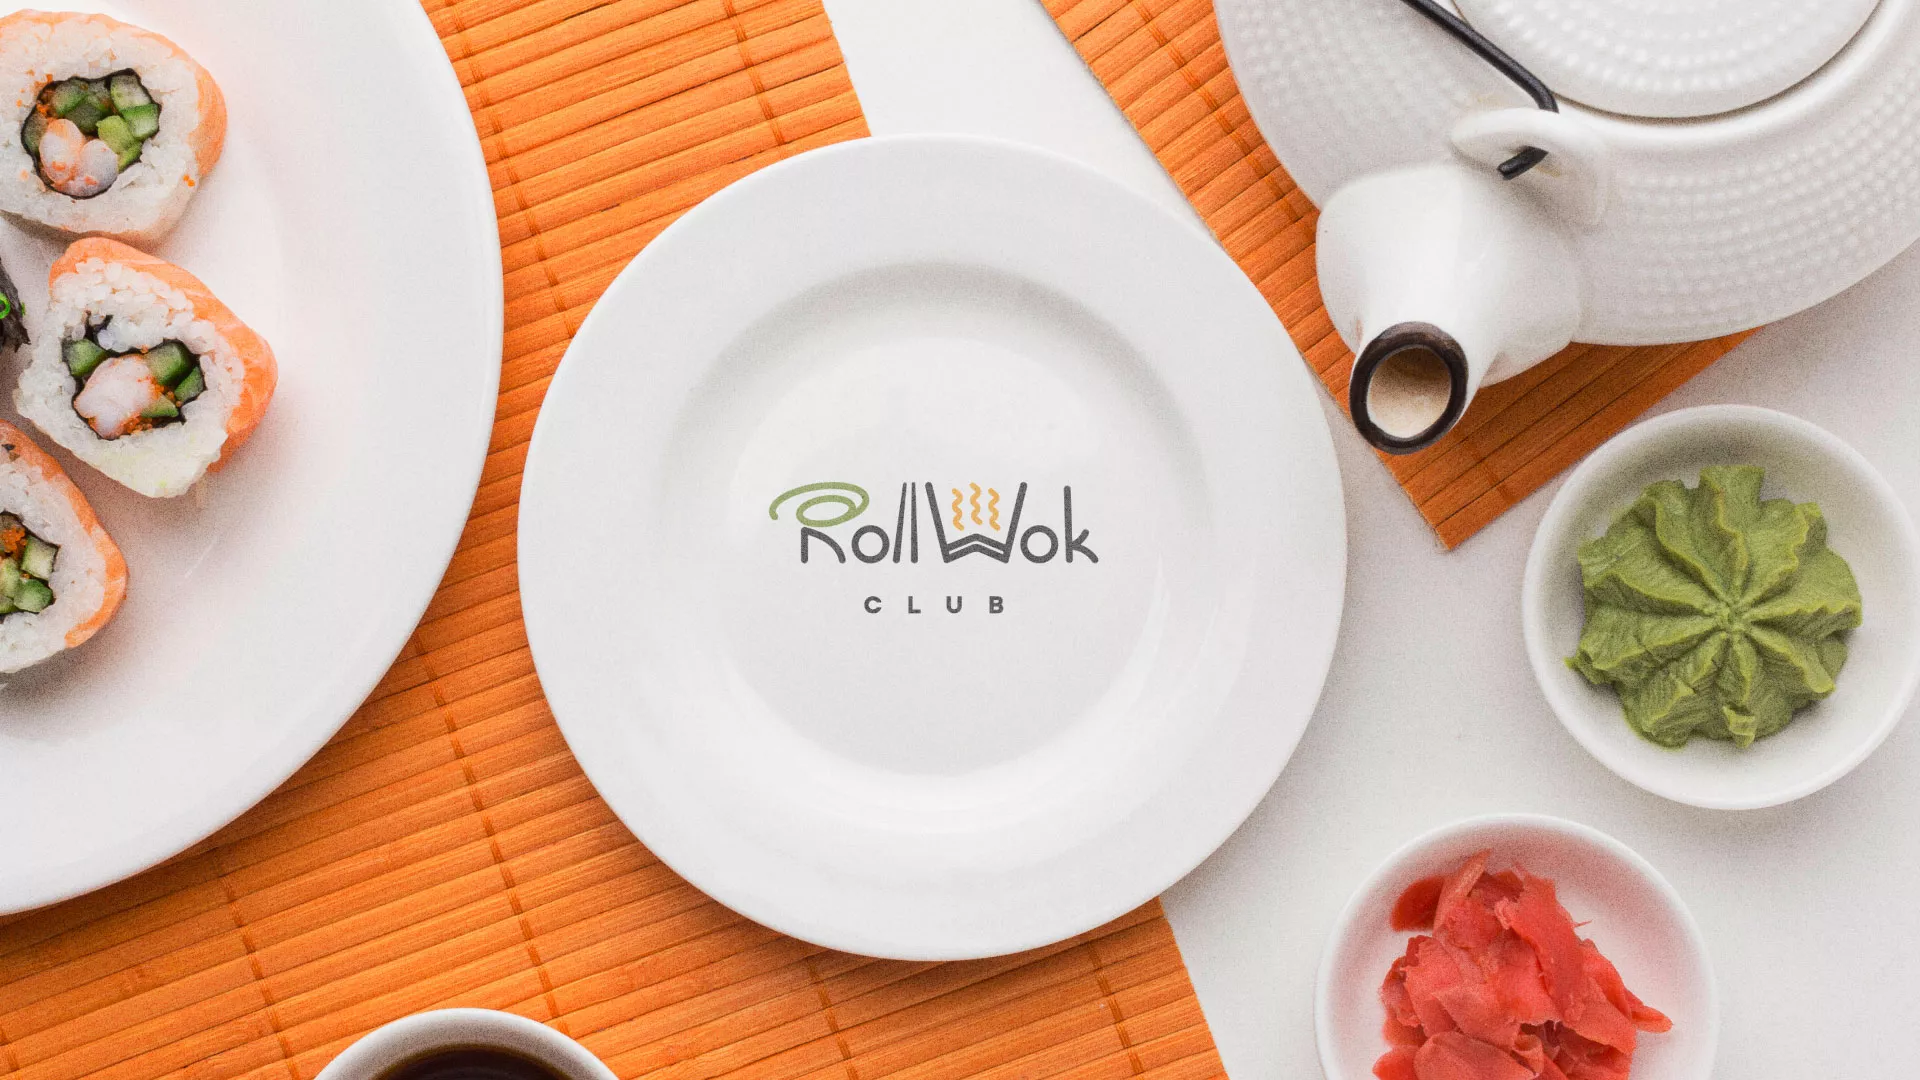 Разработка логотипа и фирменного стиля суши-бара «Roll Wok Club» в Ельце